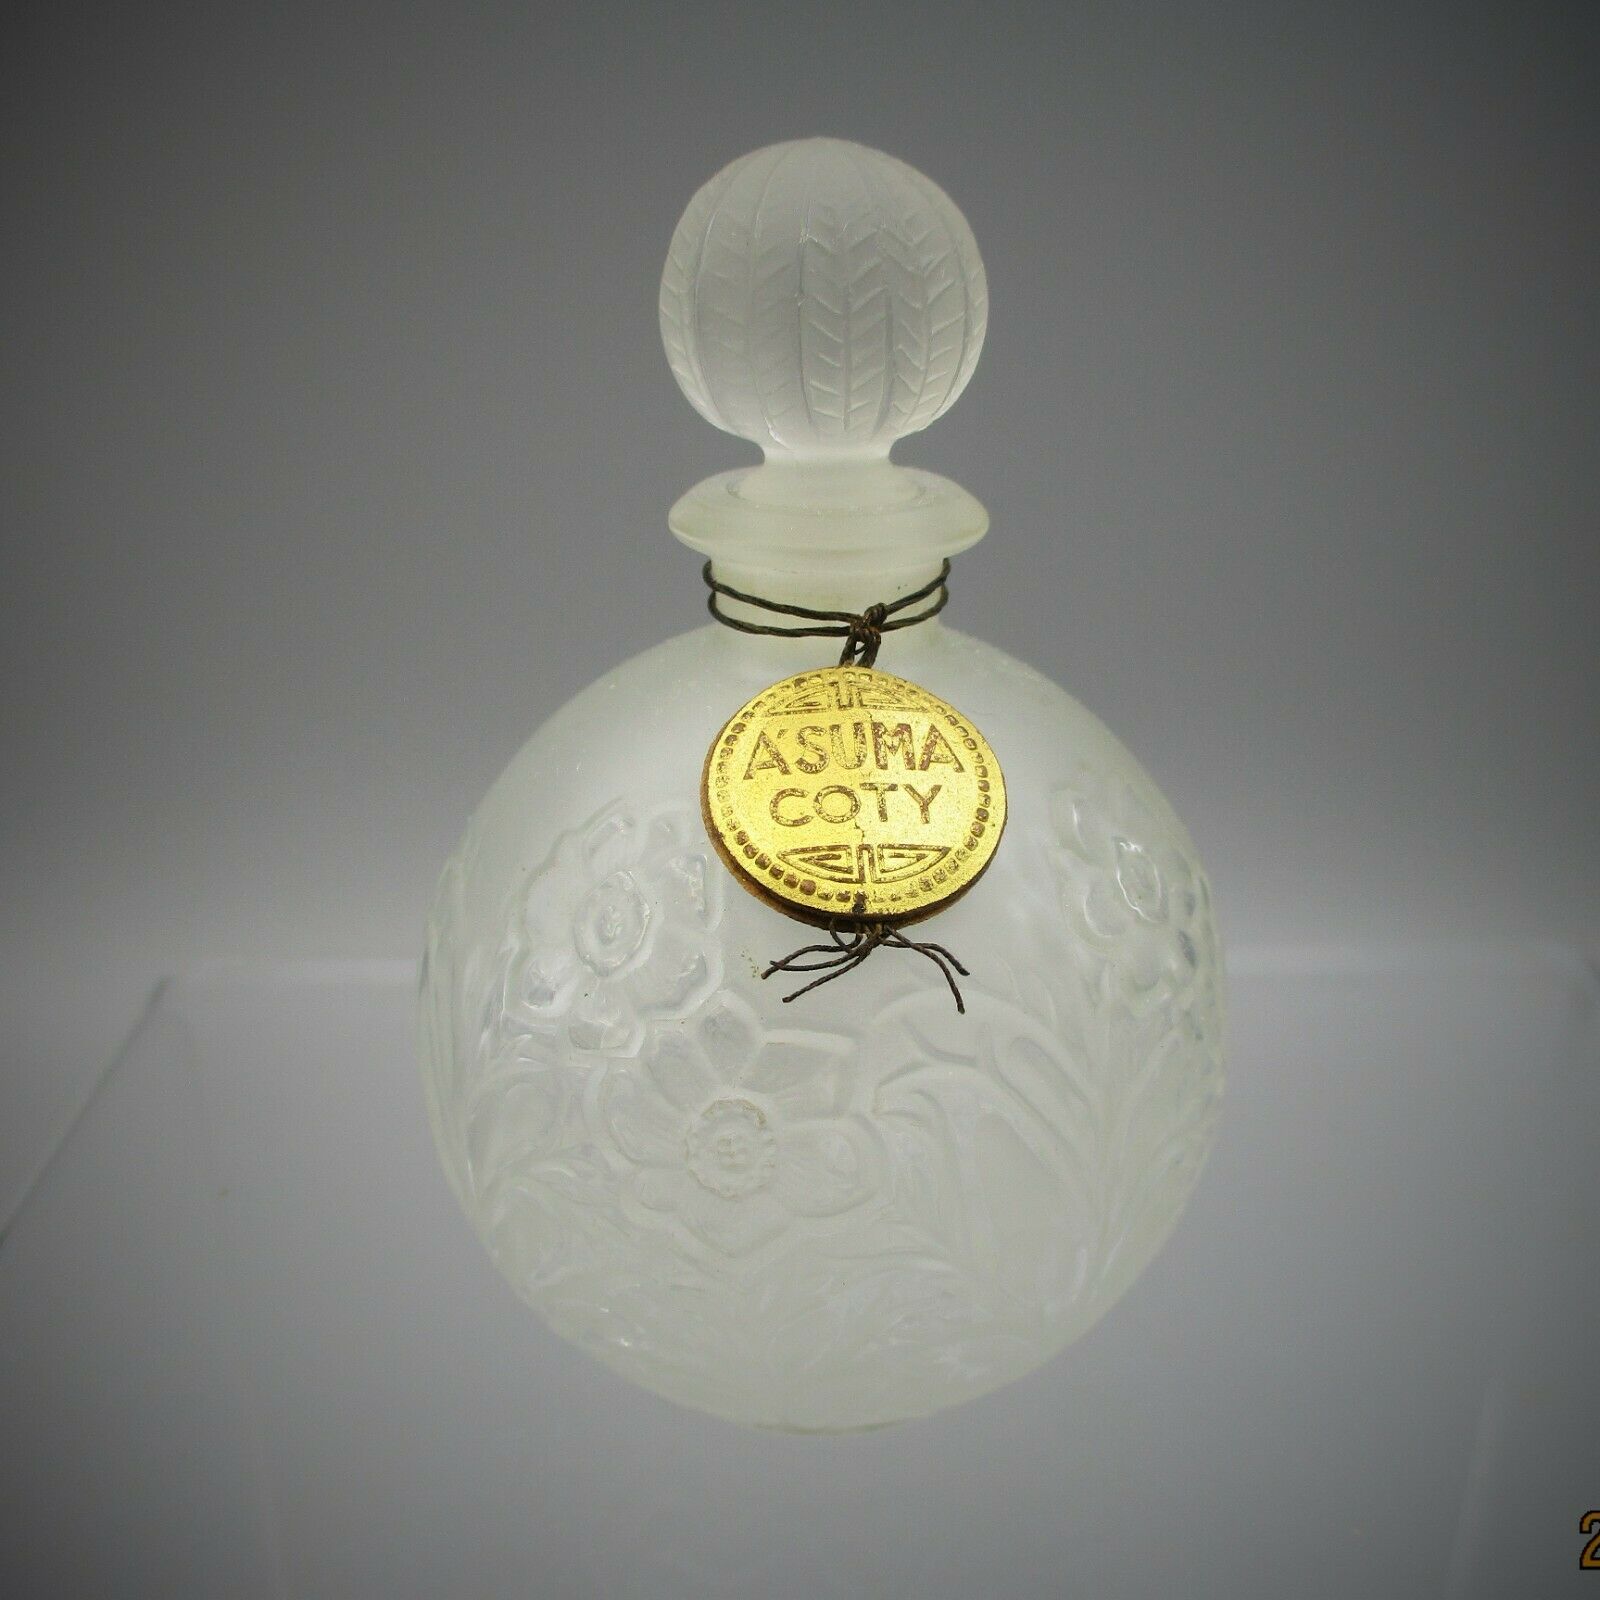 Coty A'suma Perfume Bottle